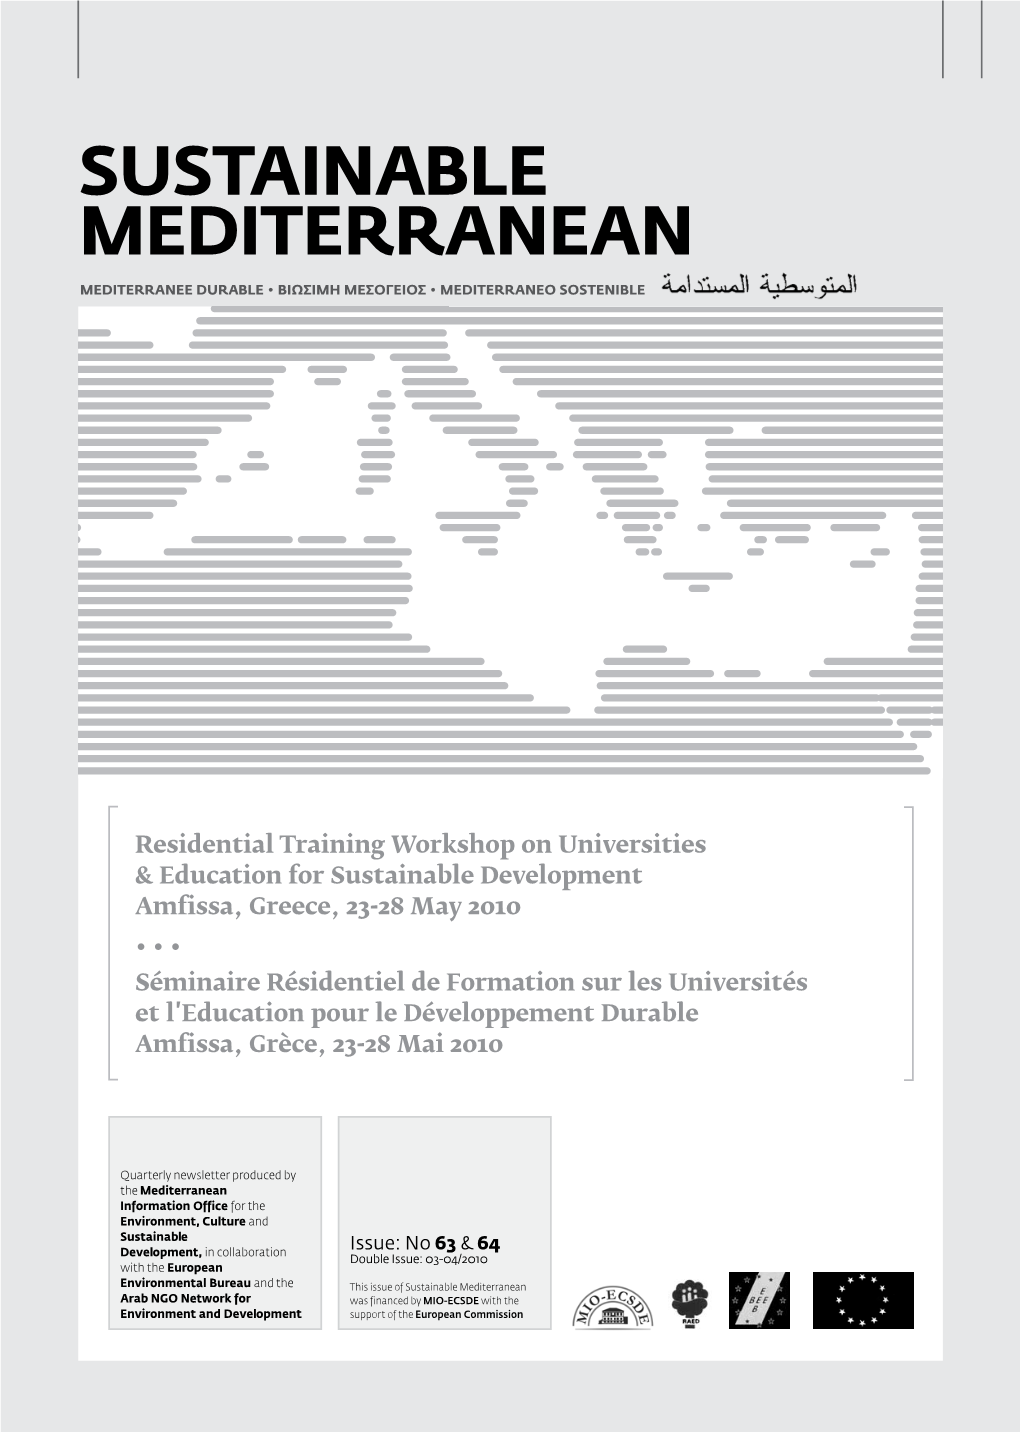 Sustainable Mediterranean, Issue No 63-64, 03 04 2010